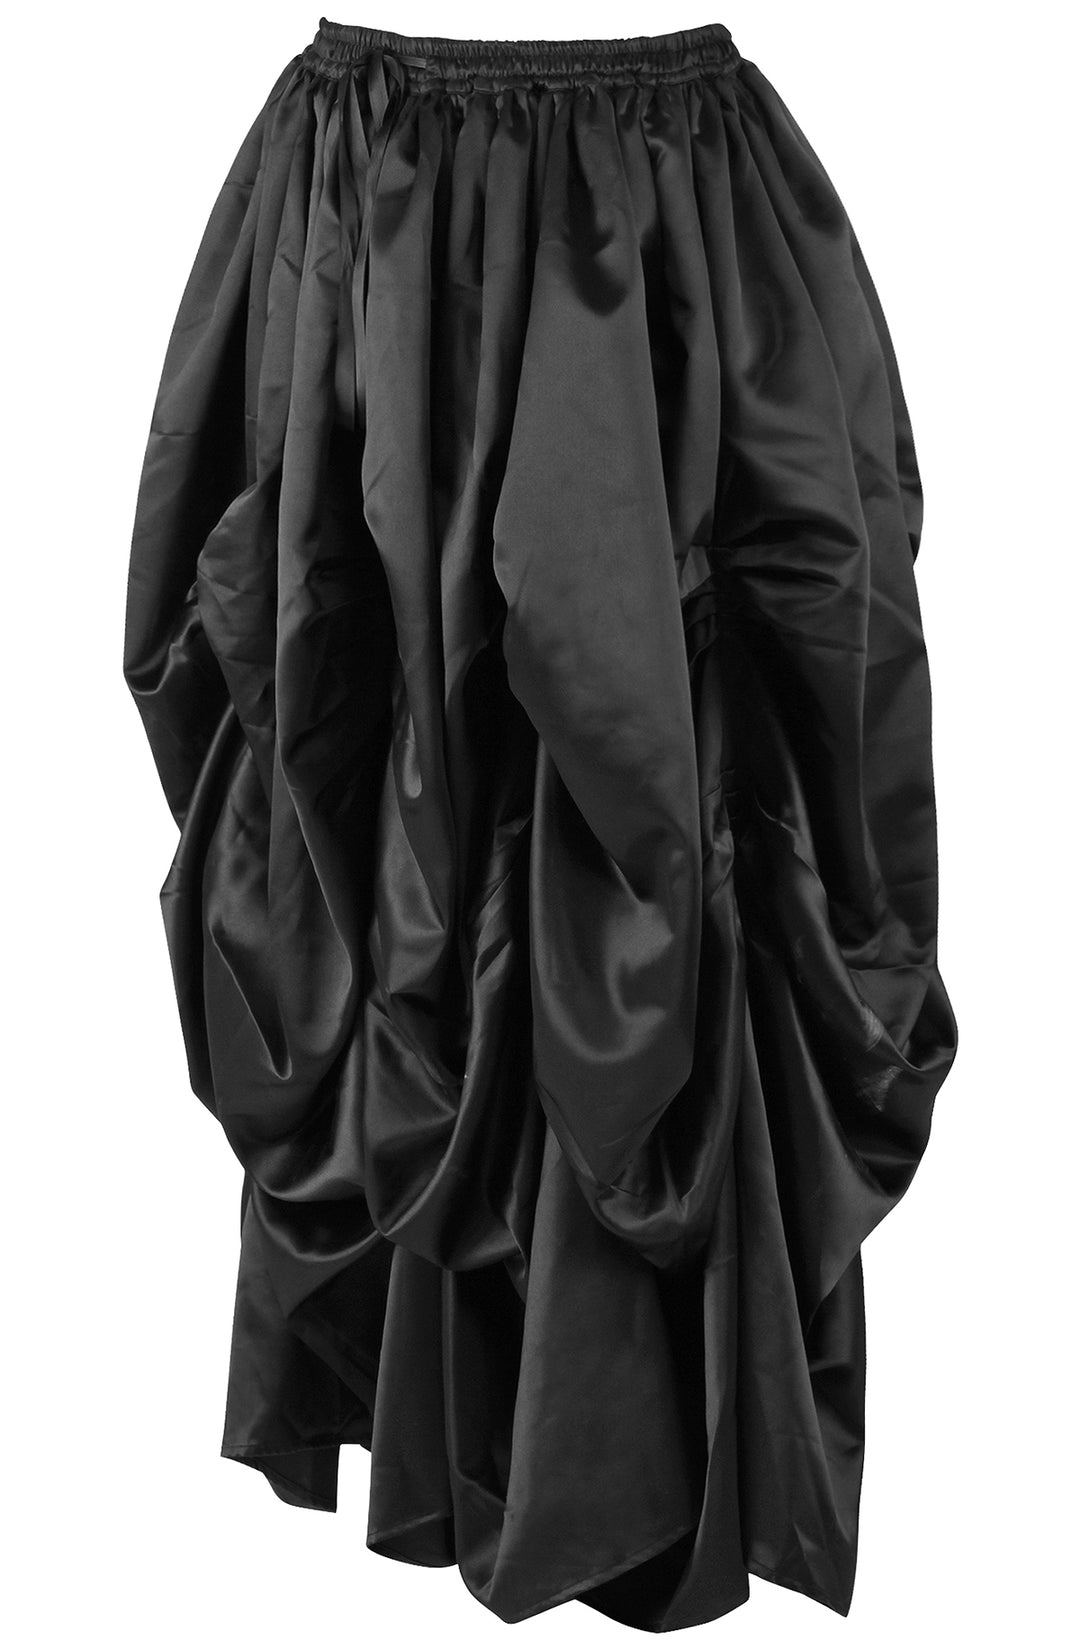 Slipper Satin Black Ball Gown Skirt 2